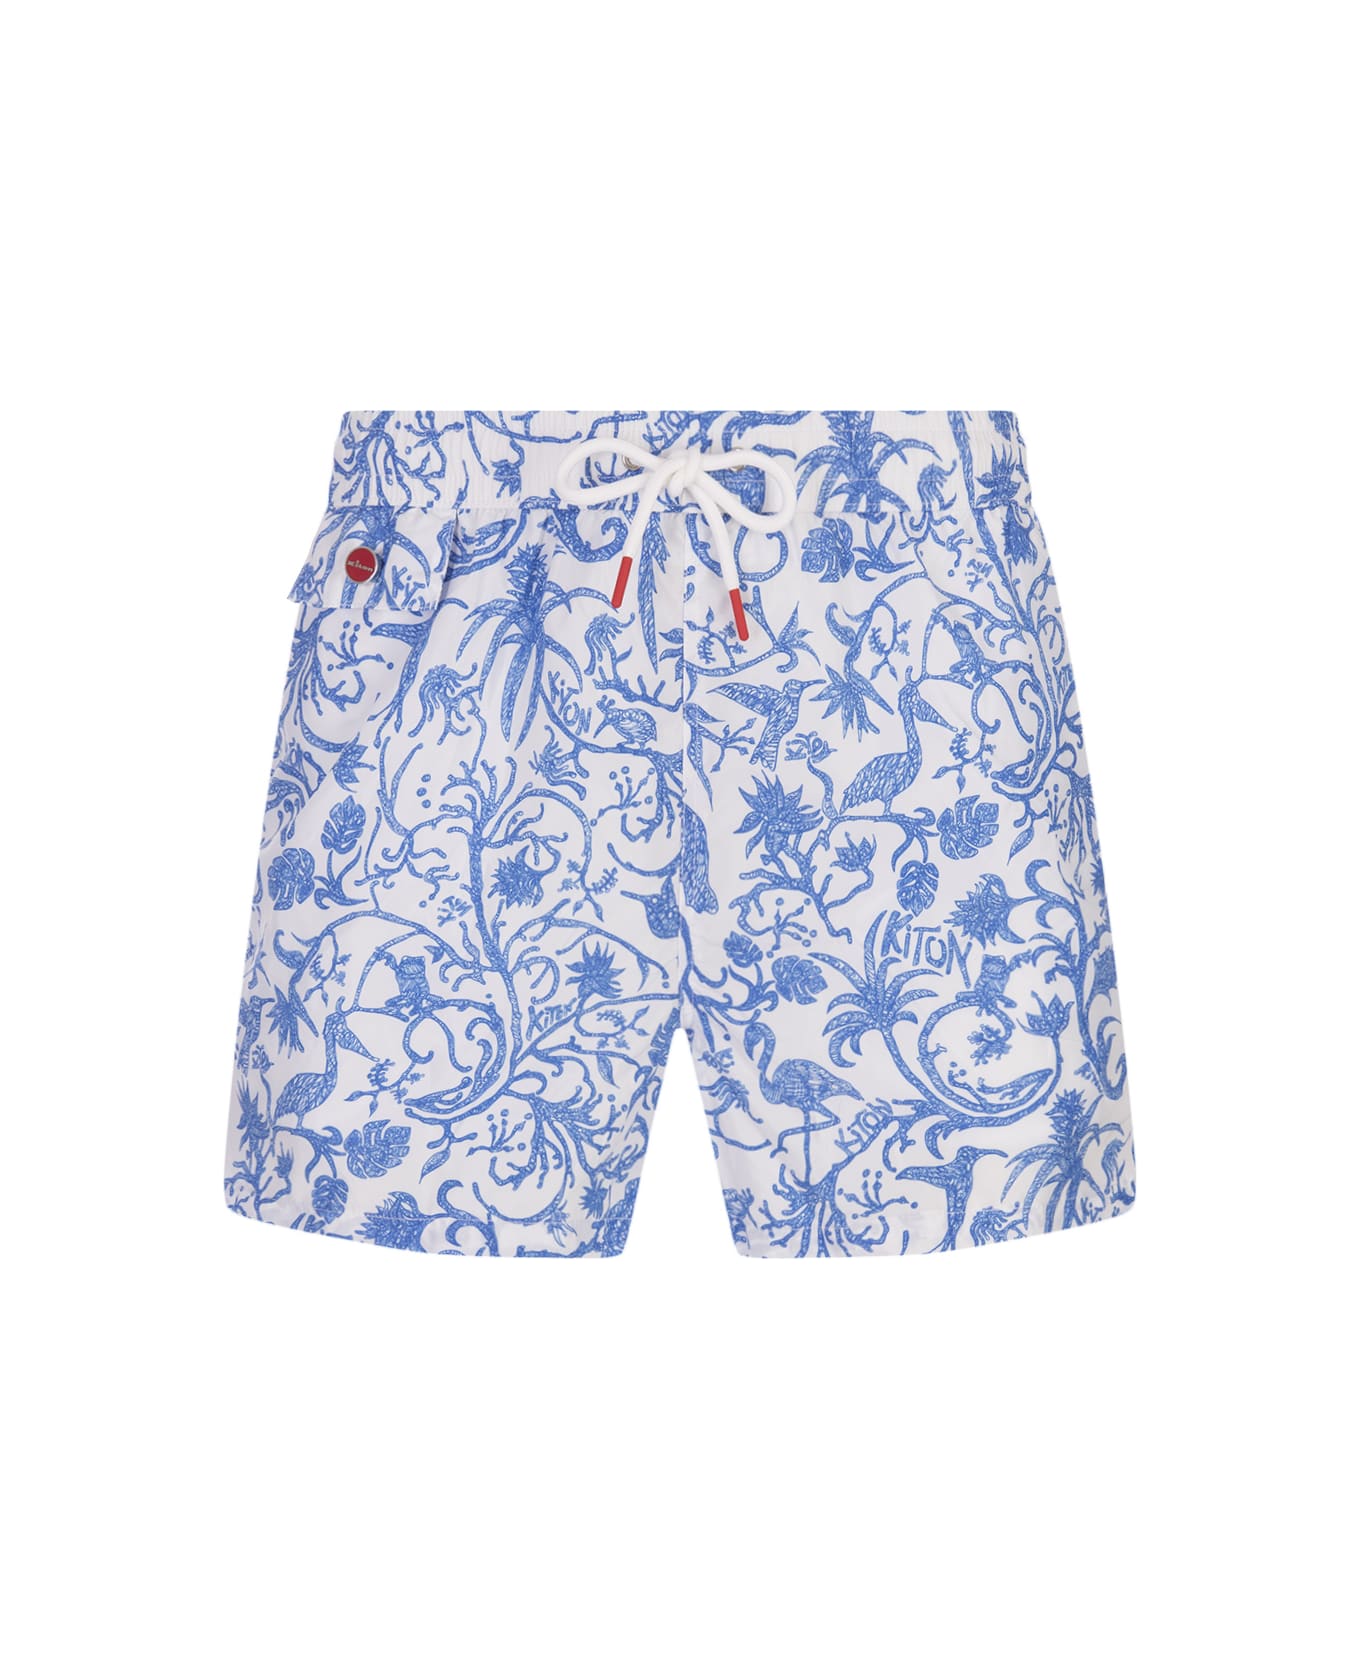 Kiton White Swim Shorts With Blue Fantasy Print - White スイムトランクス